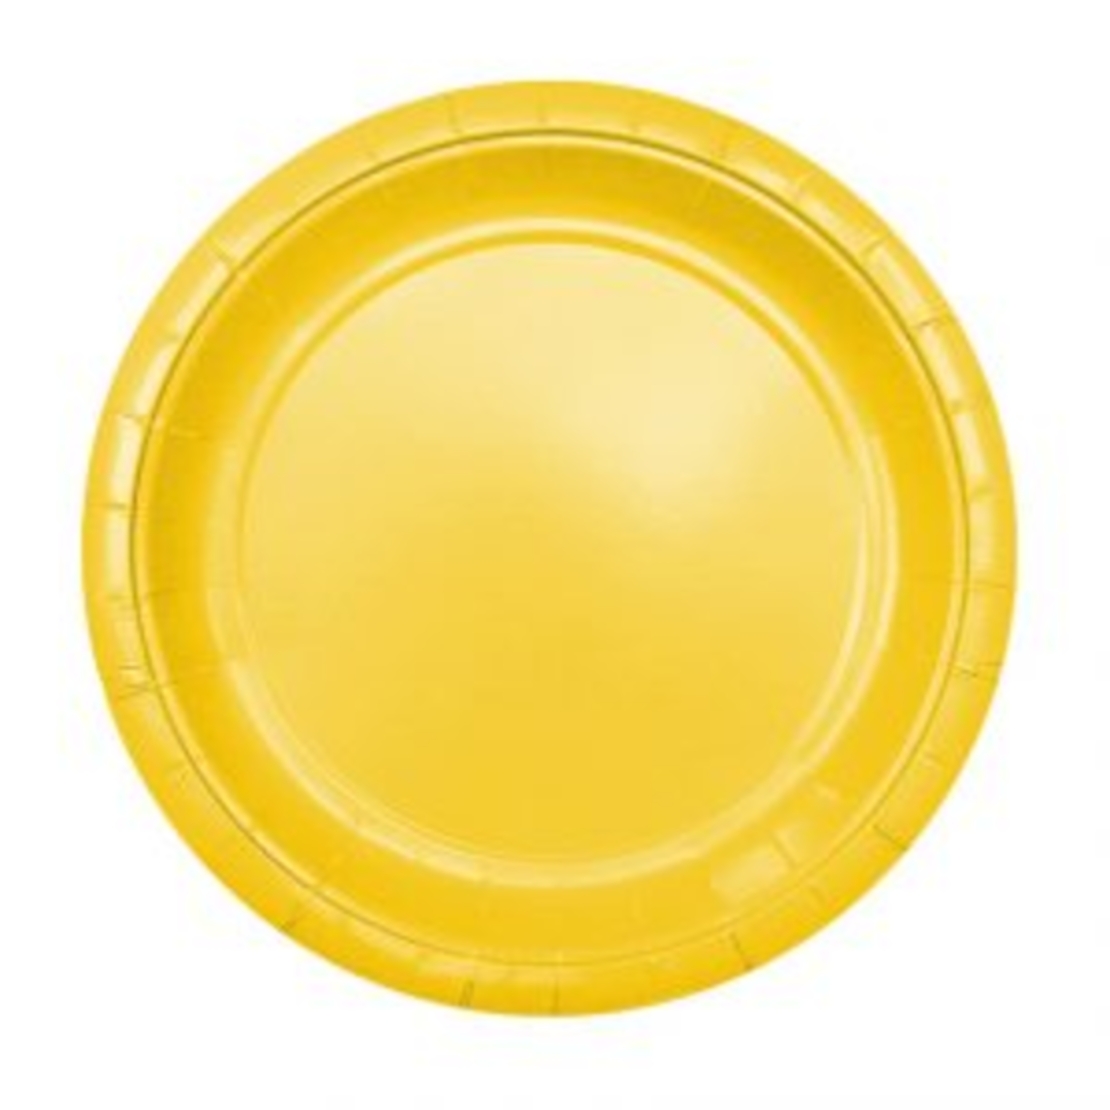 צלחות חלקות צבע צהוב 24 יח' בינוני